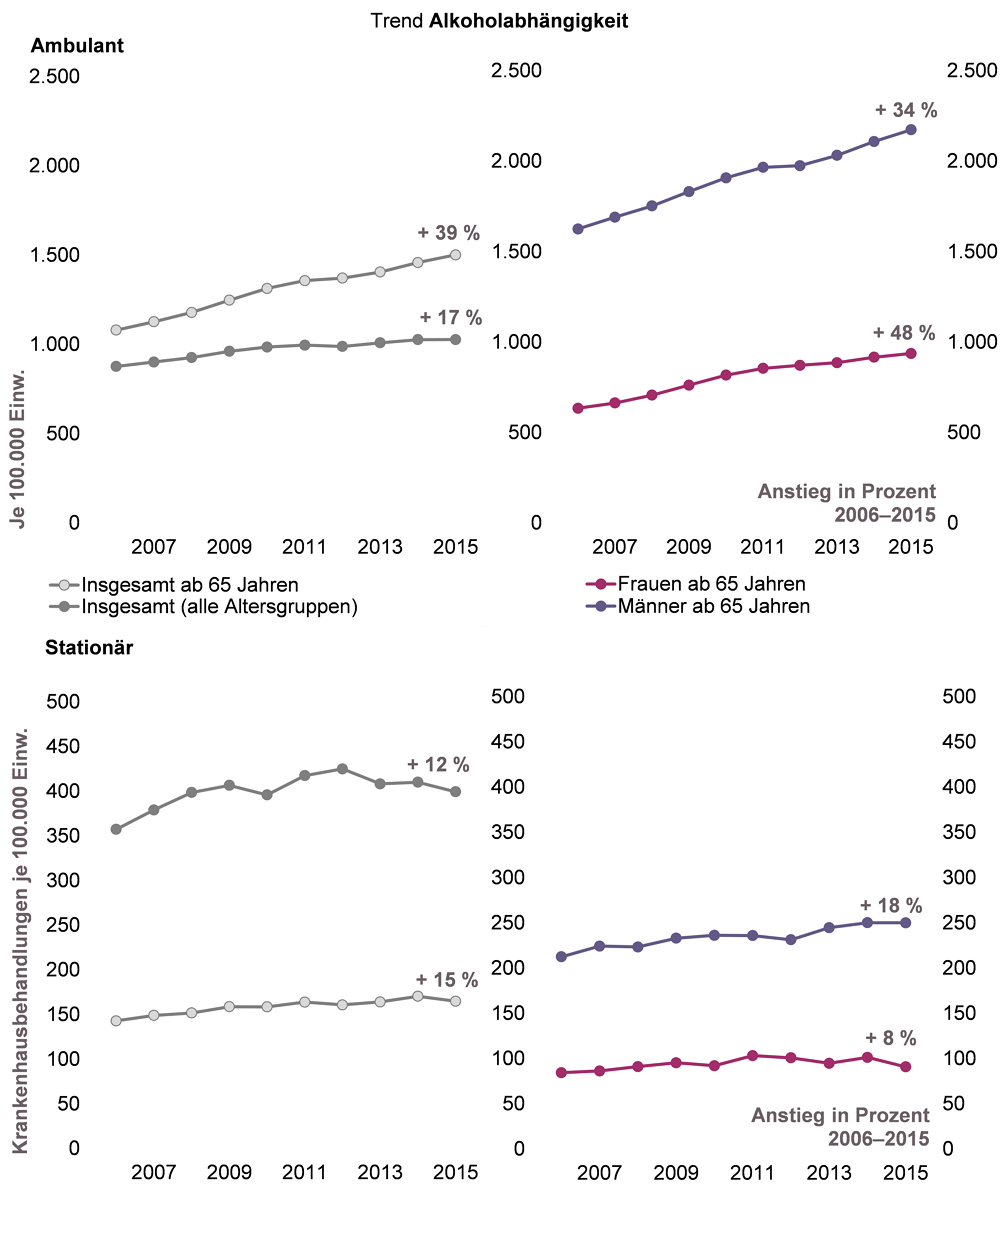 Trenddiagramm zur ambulanten Behandlungshäufigkeit und zu Krankenhausfällen aufgrund Alkoholabhängigkeit in NRW für den Zeitraum 2006 bis 2015